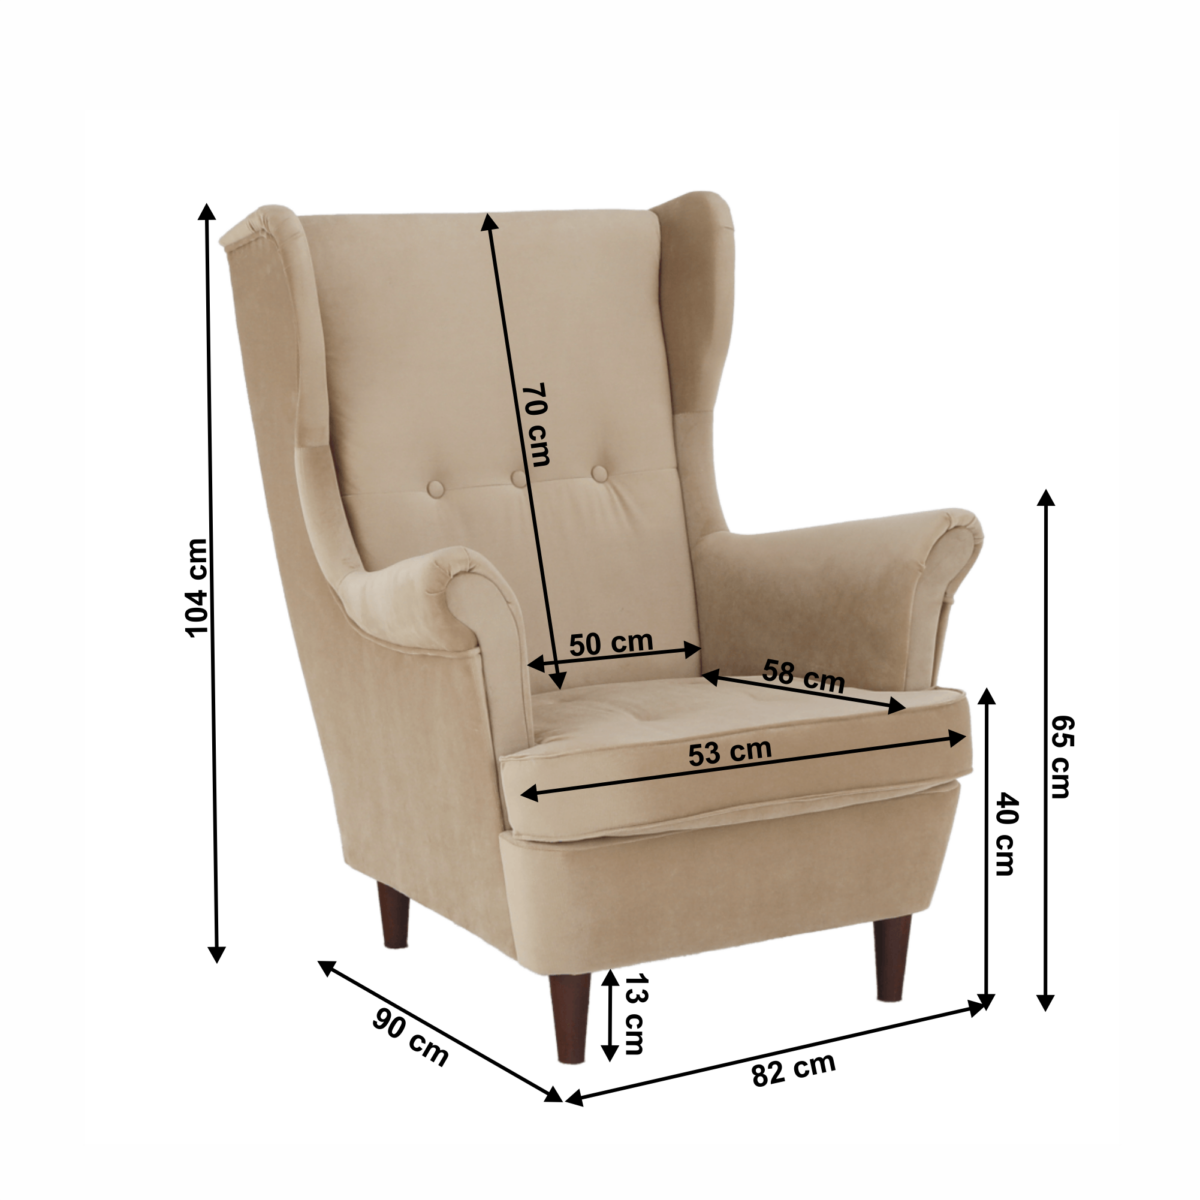 Füles fotel, arany-bézs/dió, RUFINO 2 NEW